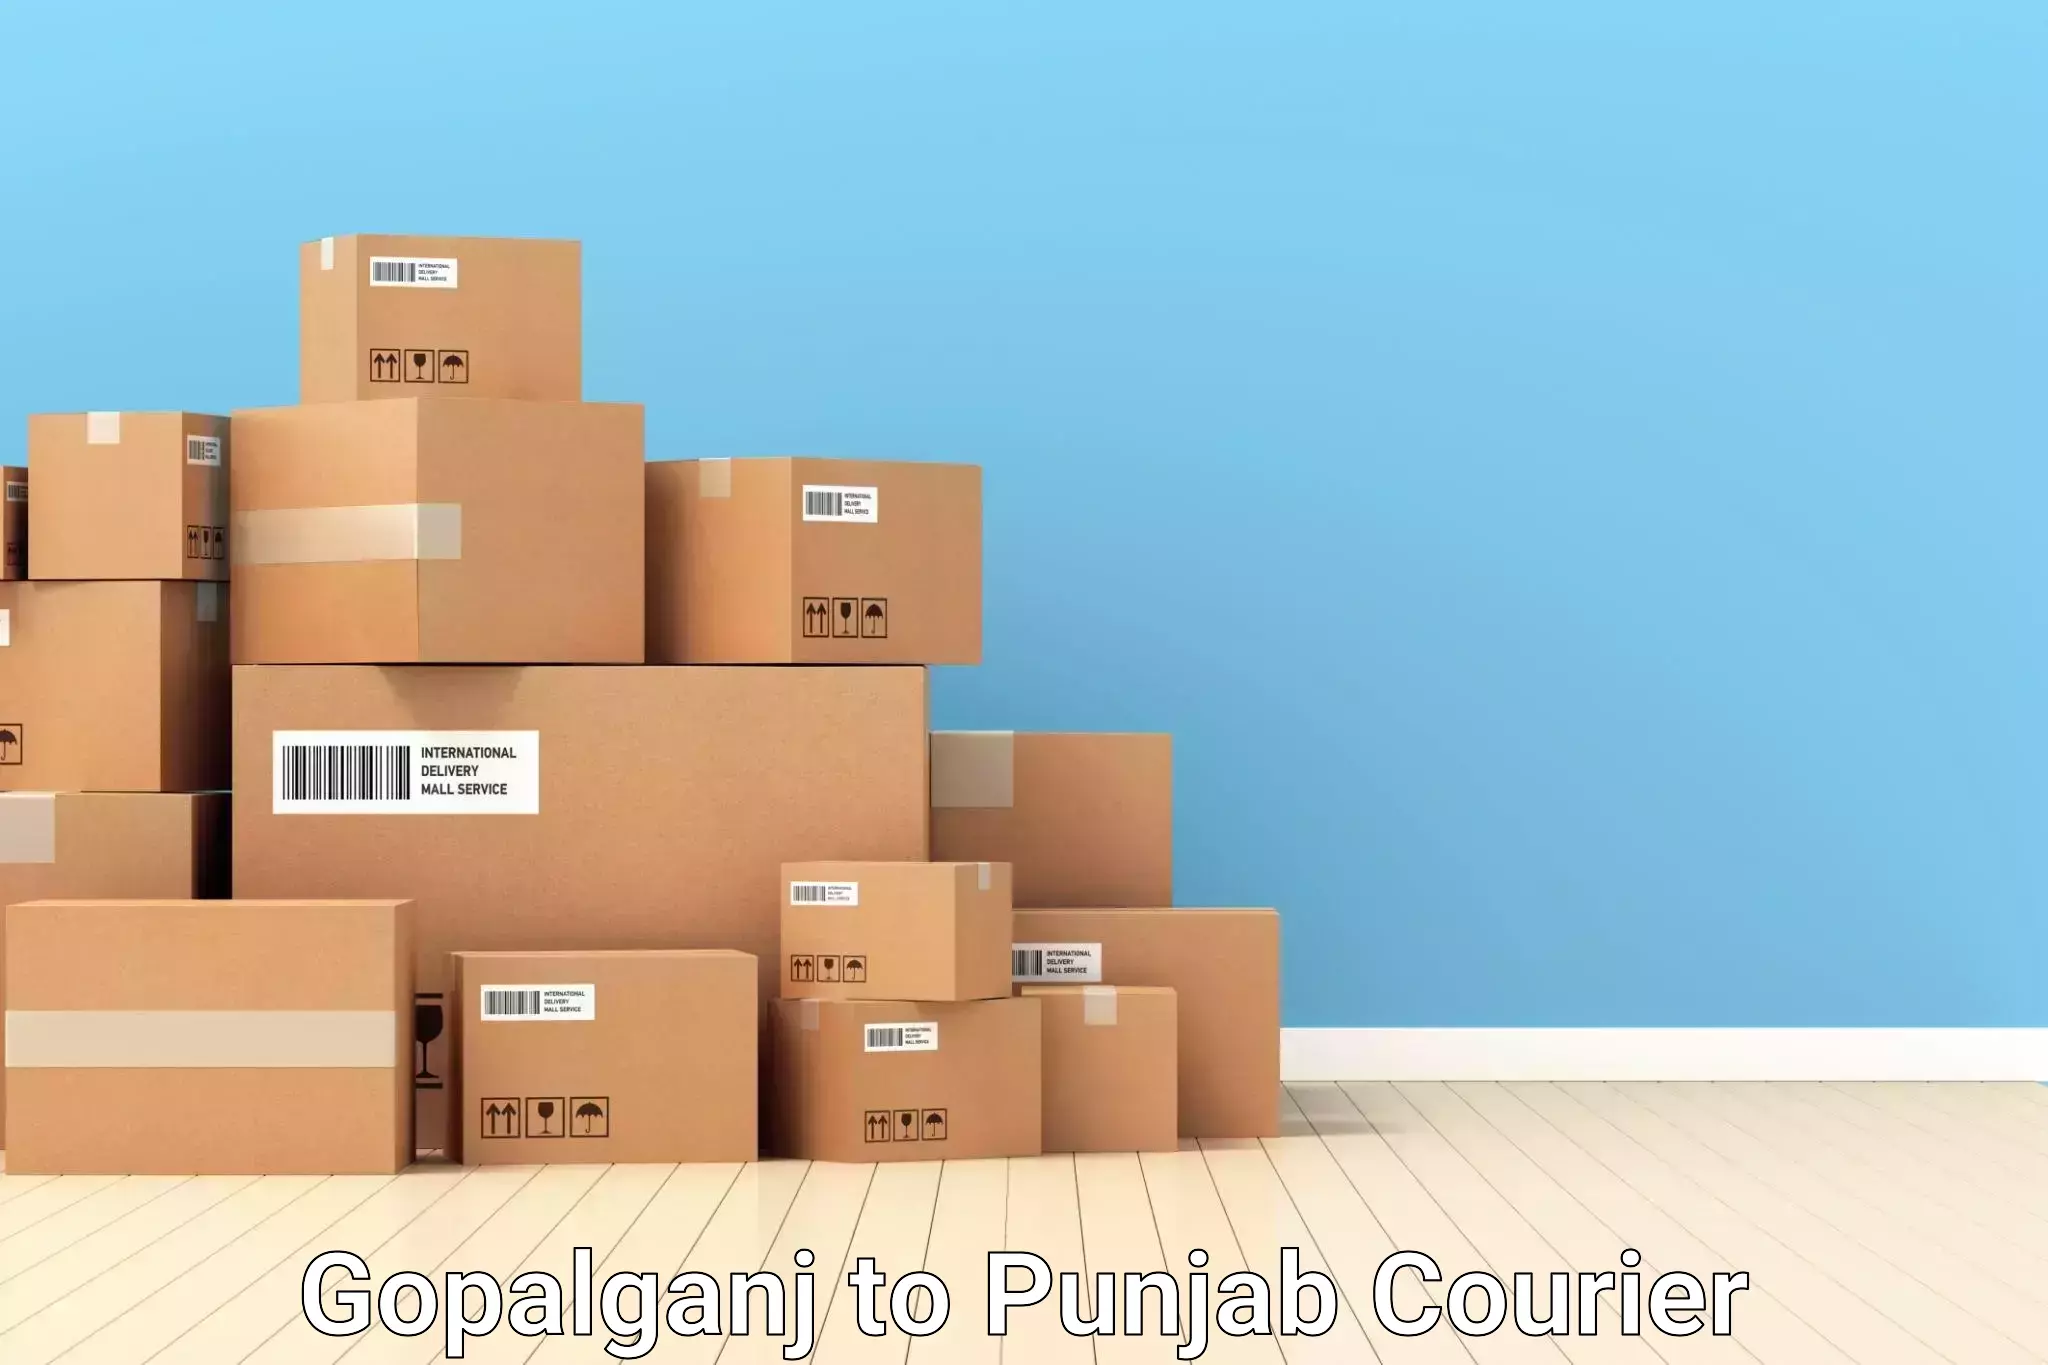 Baggage courier optimization Gopalganj to Punjab